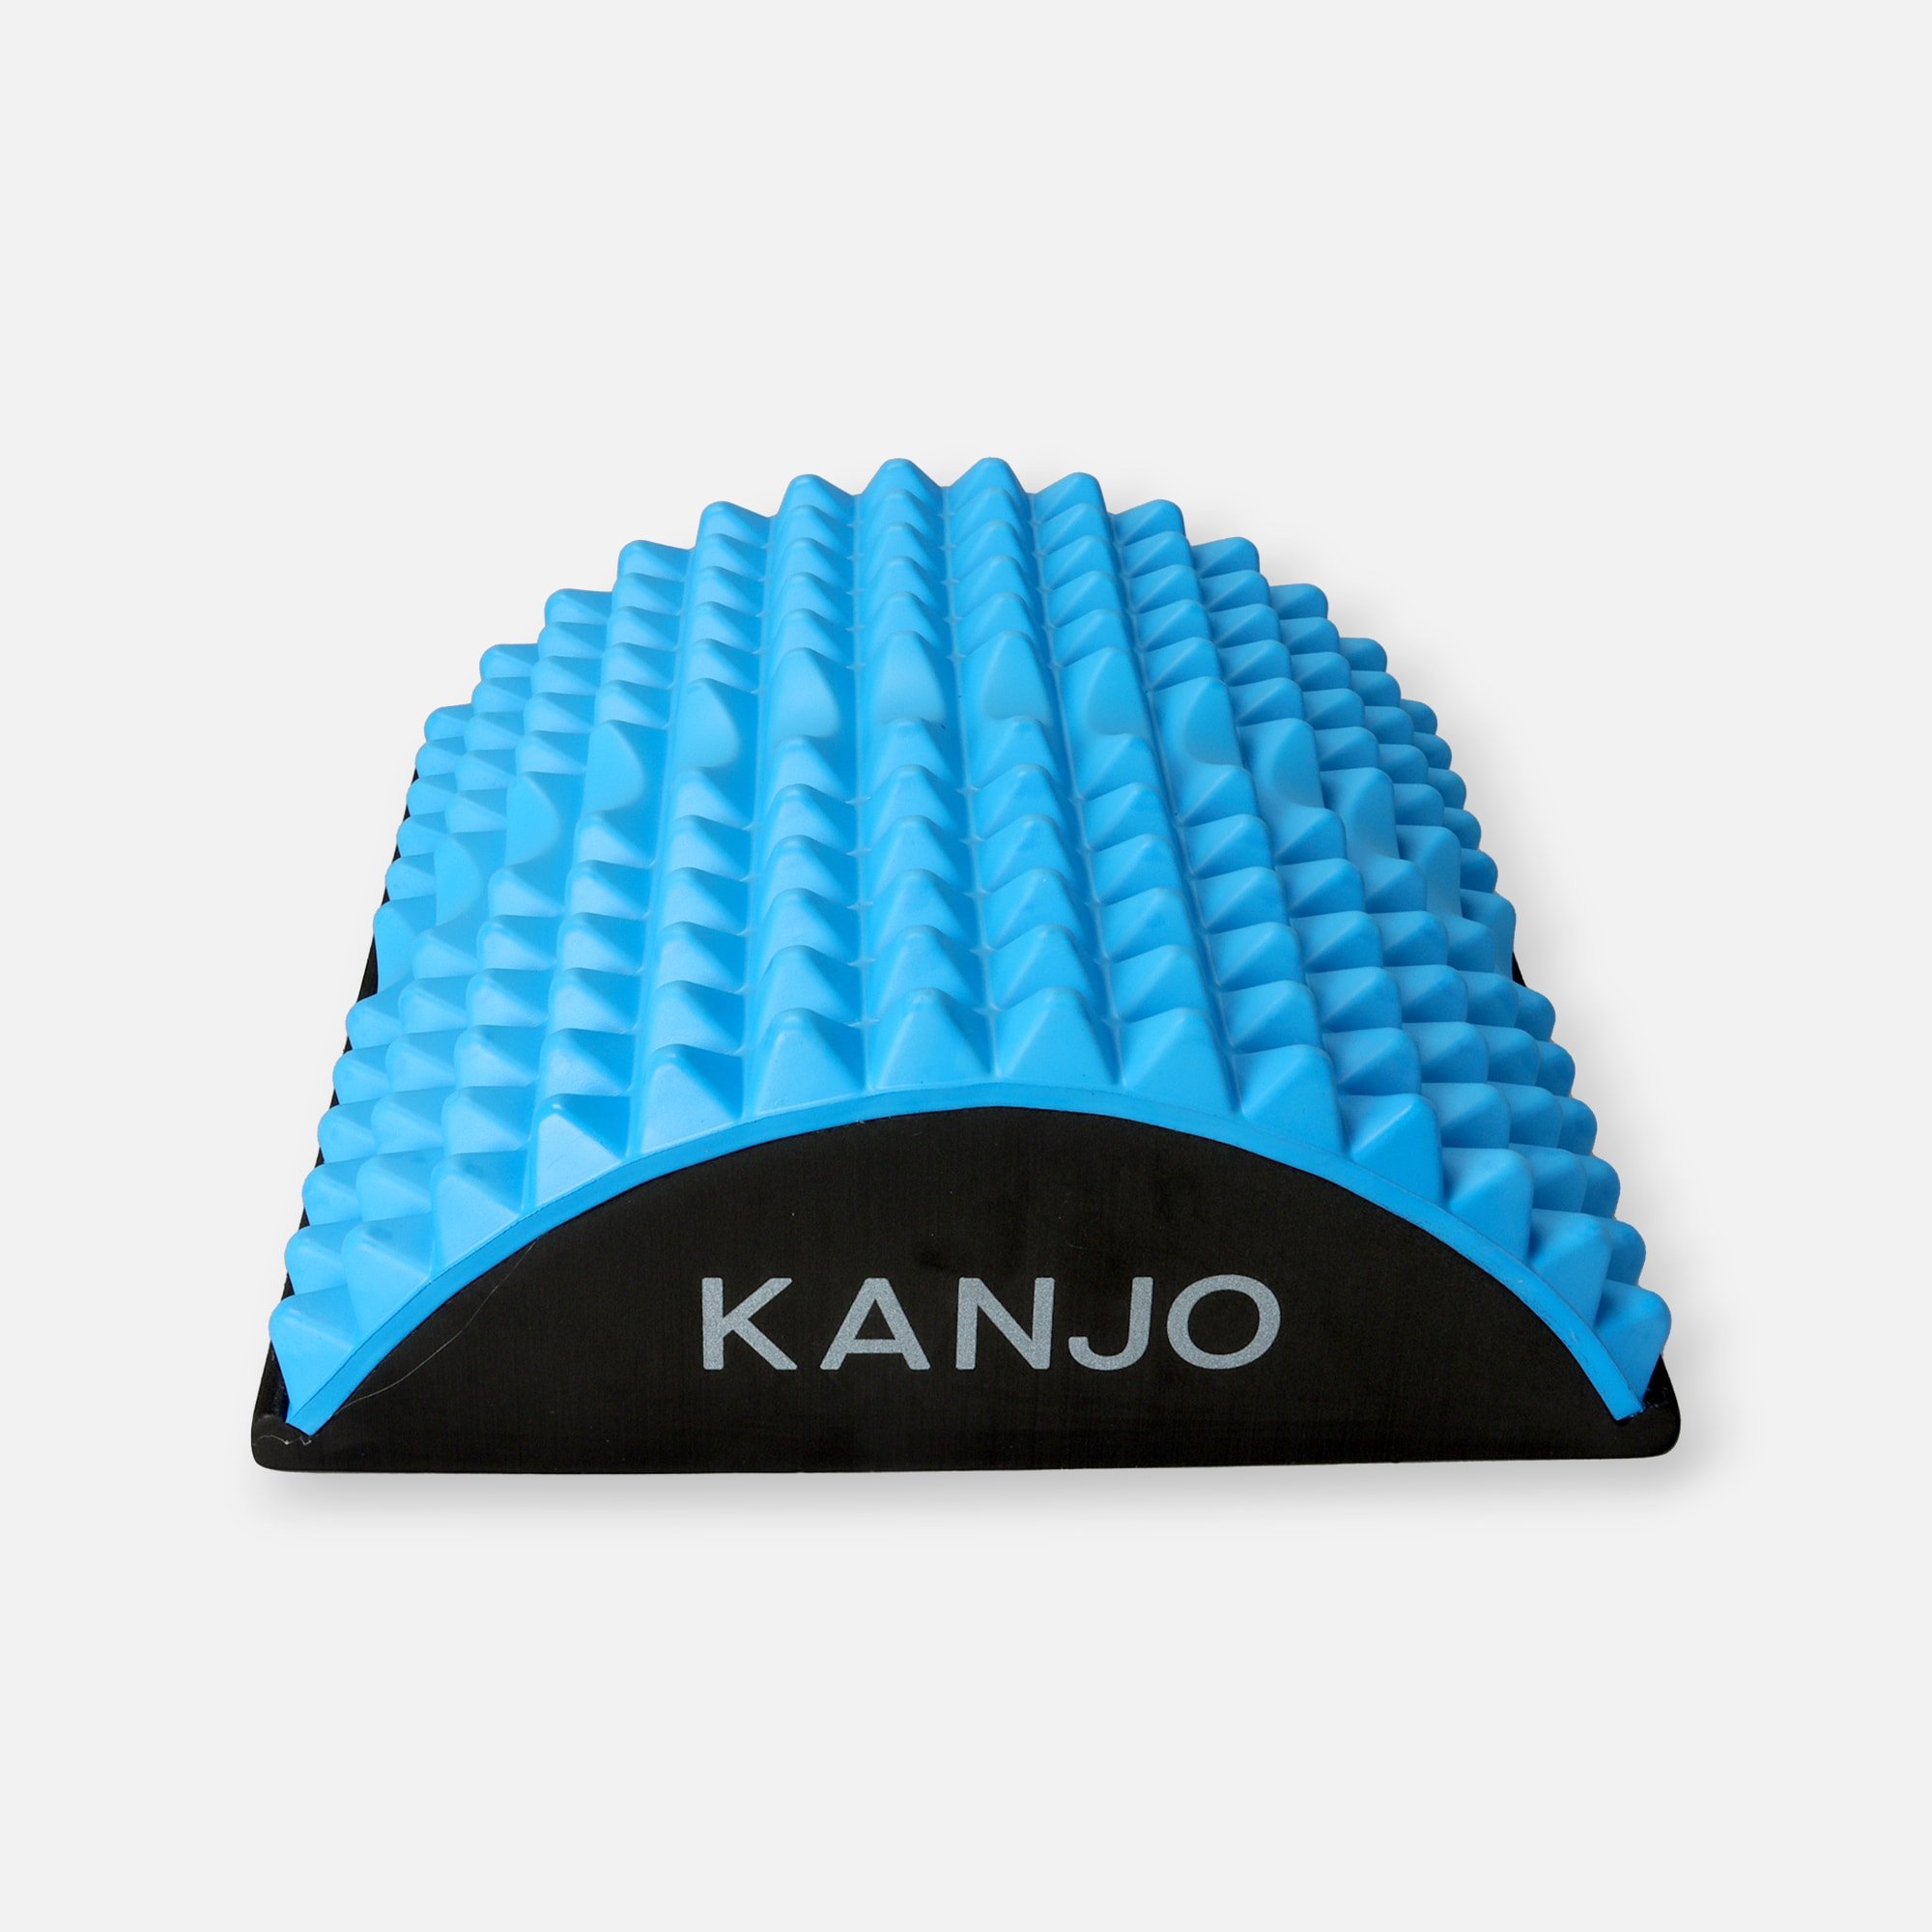 https://fsastore.com/on/demandware.static/-/Sites-hec-master/default/dwa1796b06/images/large/kanjo-acupressure-back-pain-relief-cushion-28718-1.jpg